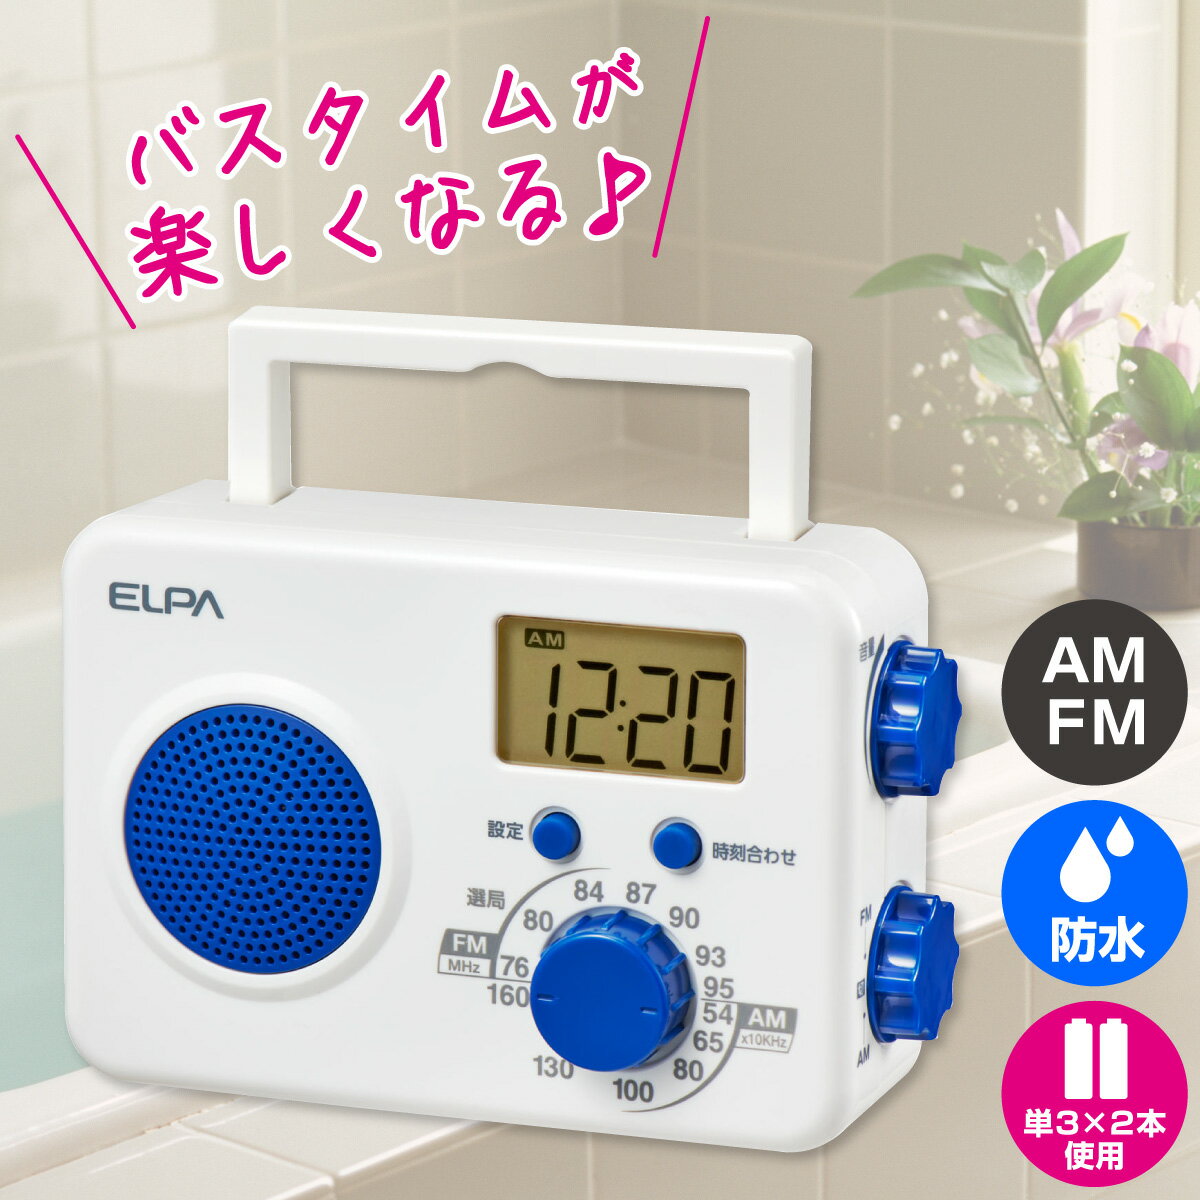 バスラジオのギフト エルパ FM/AM シャワーラジオ ER-W41F / 防沫形なのでお風呂でラジオが聴けます。キッチンでの利用も安心。